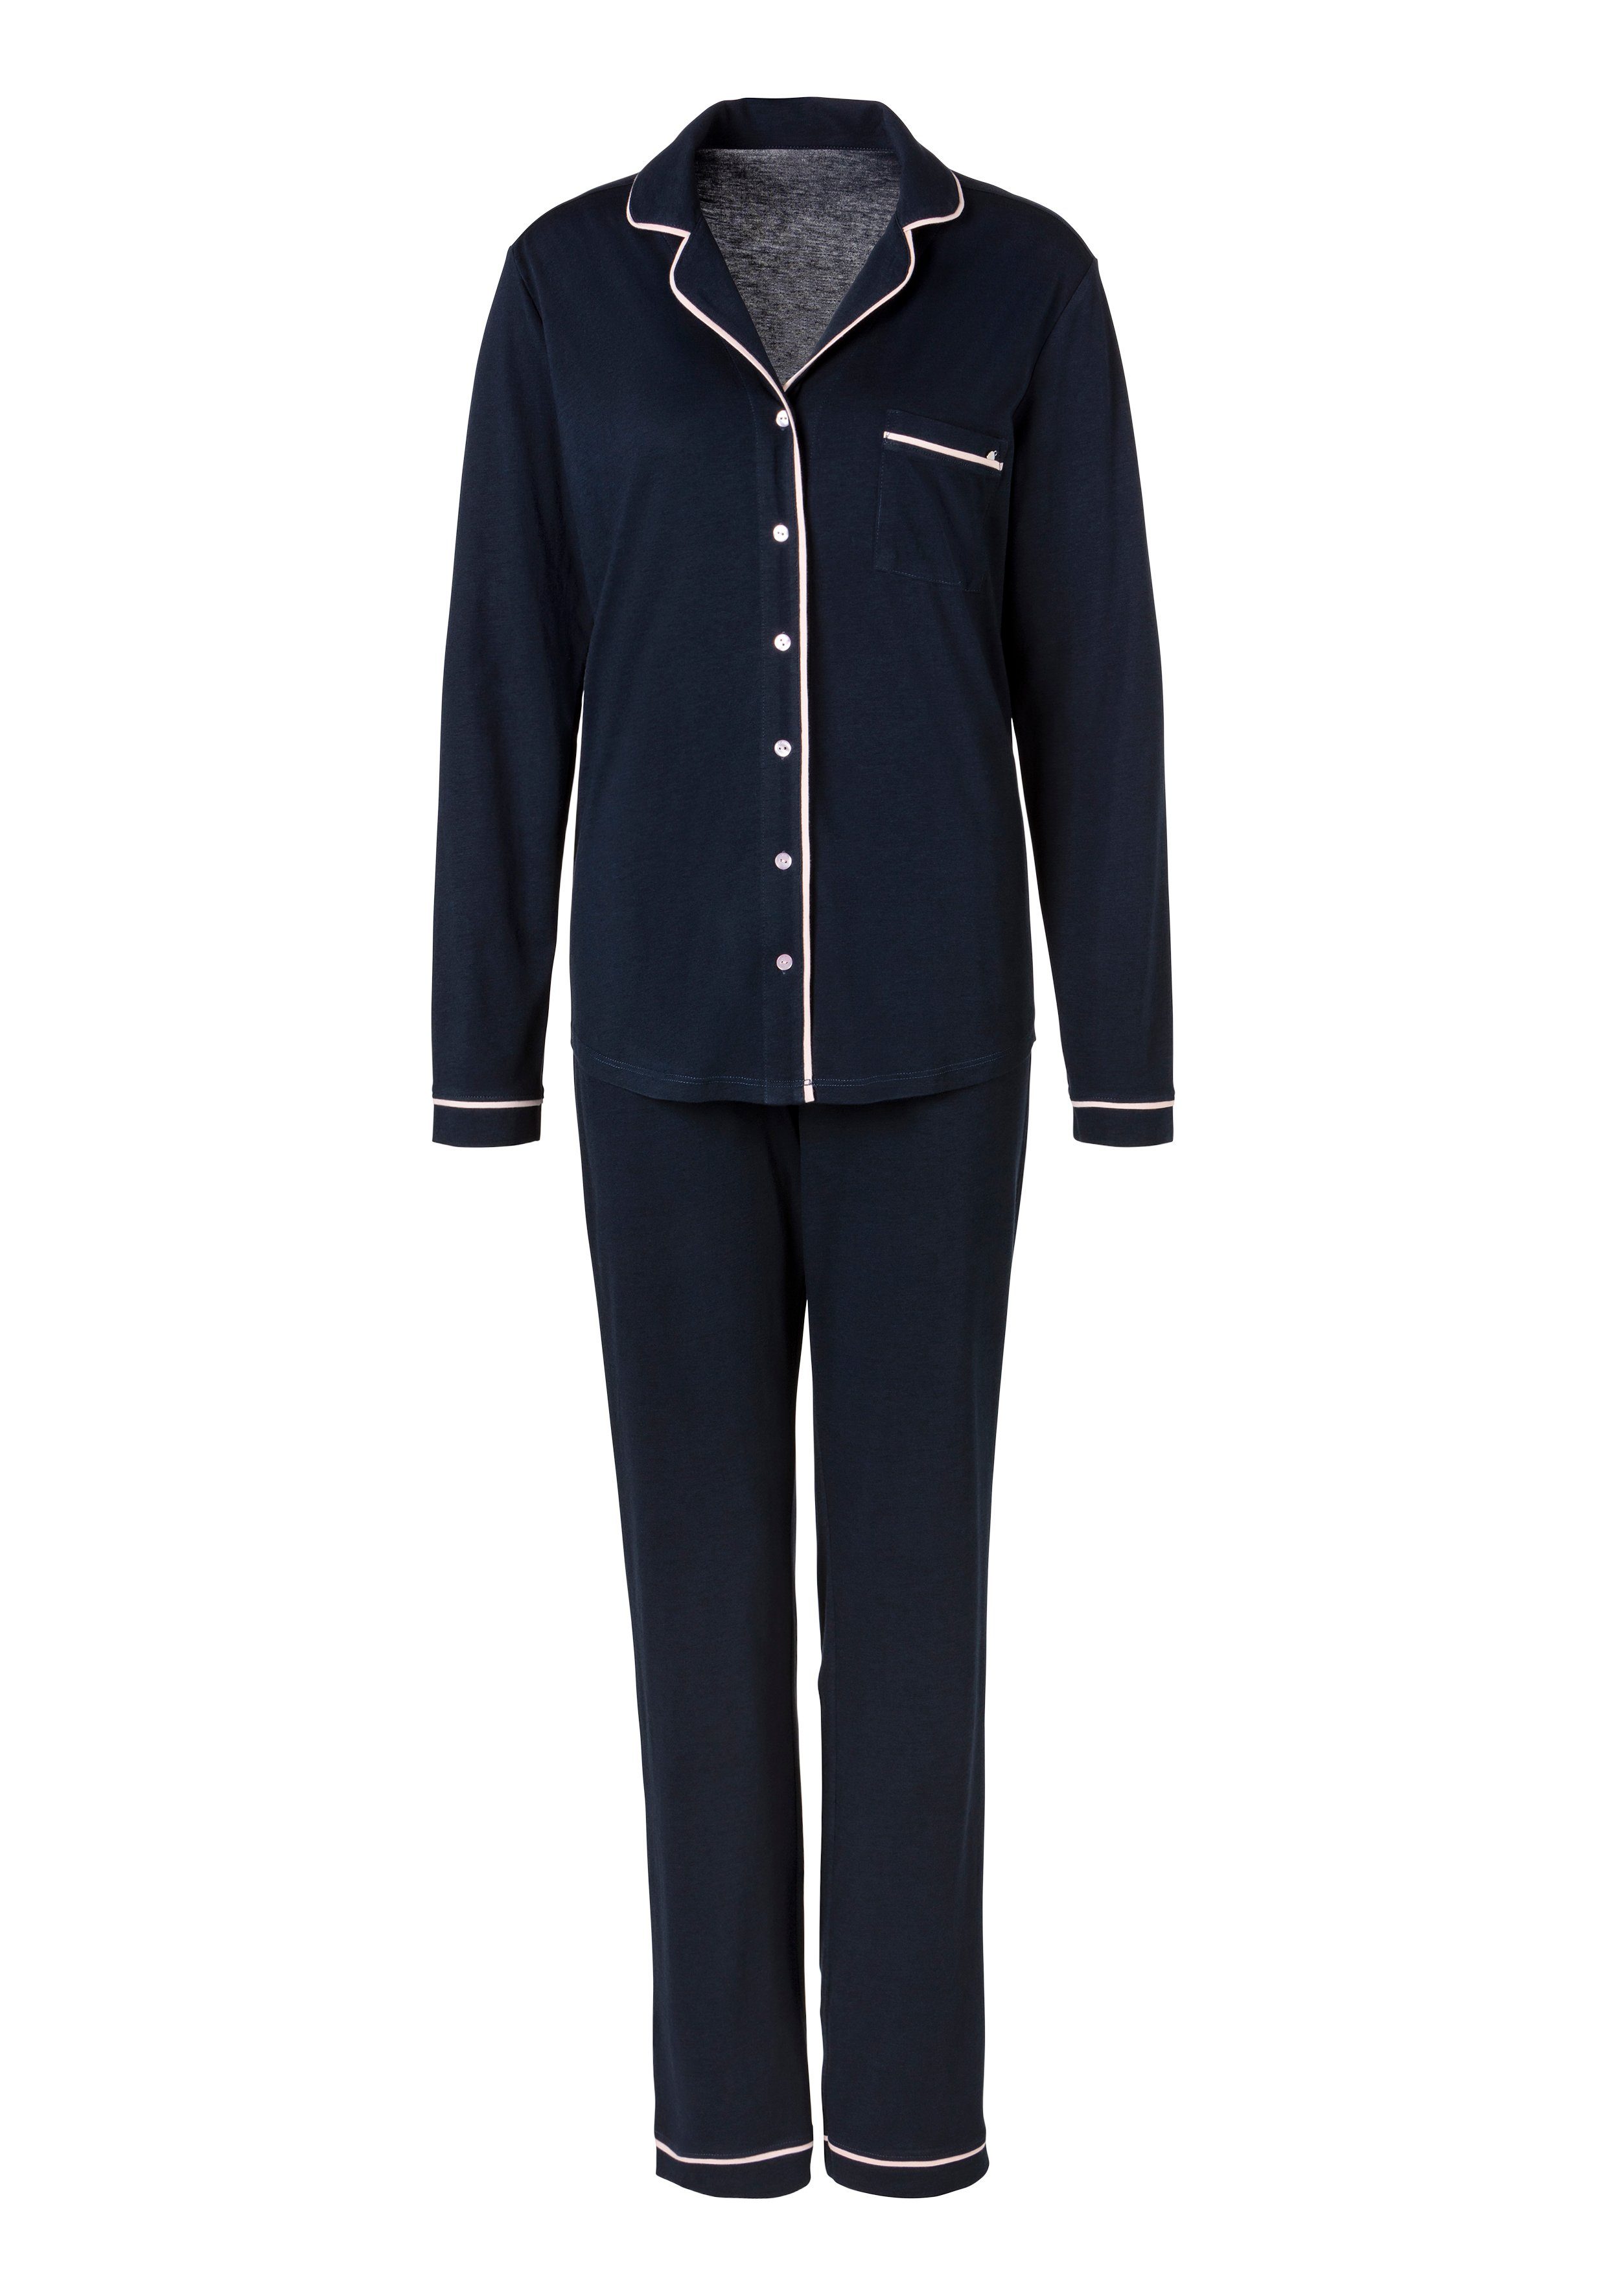 tlg) im Pyjama Streifen-design klassischen nachtblau s.Oliver (2